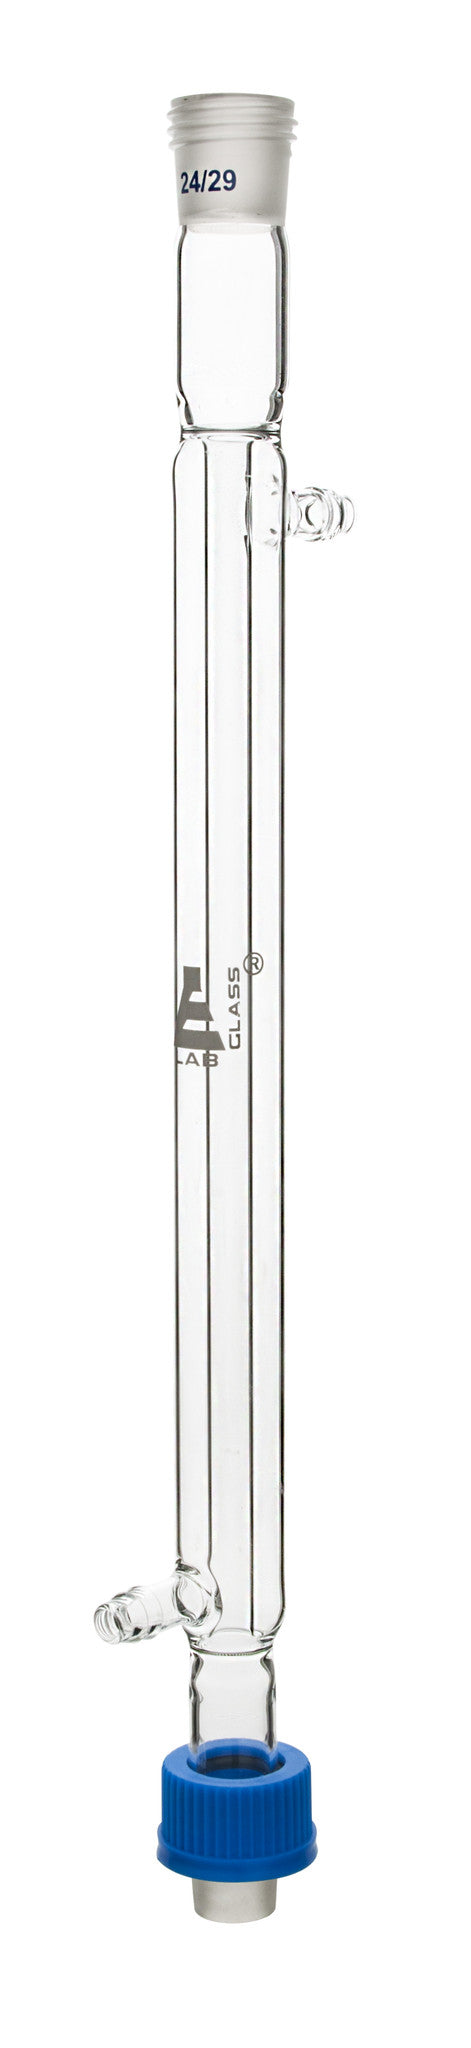 Condenser Liebig - Screw Thread, 300 mm, 24/29